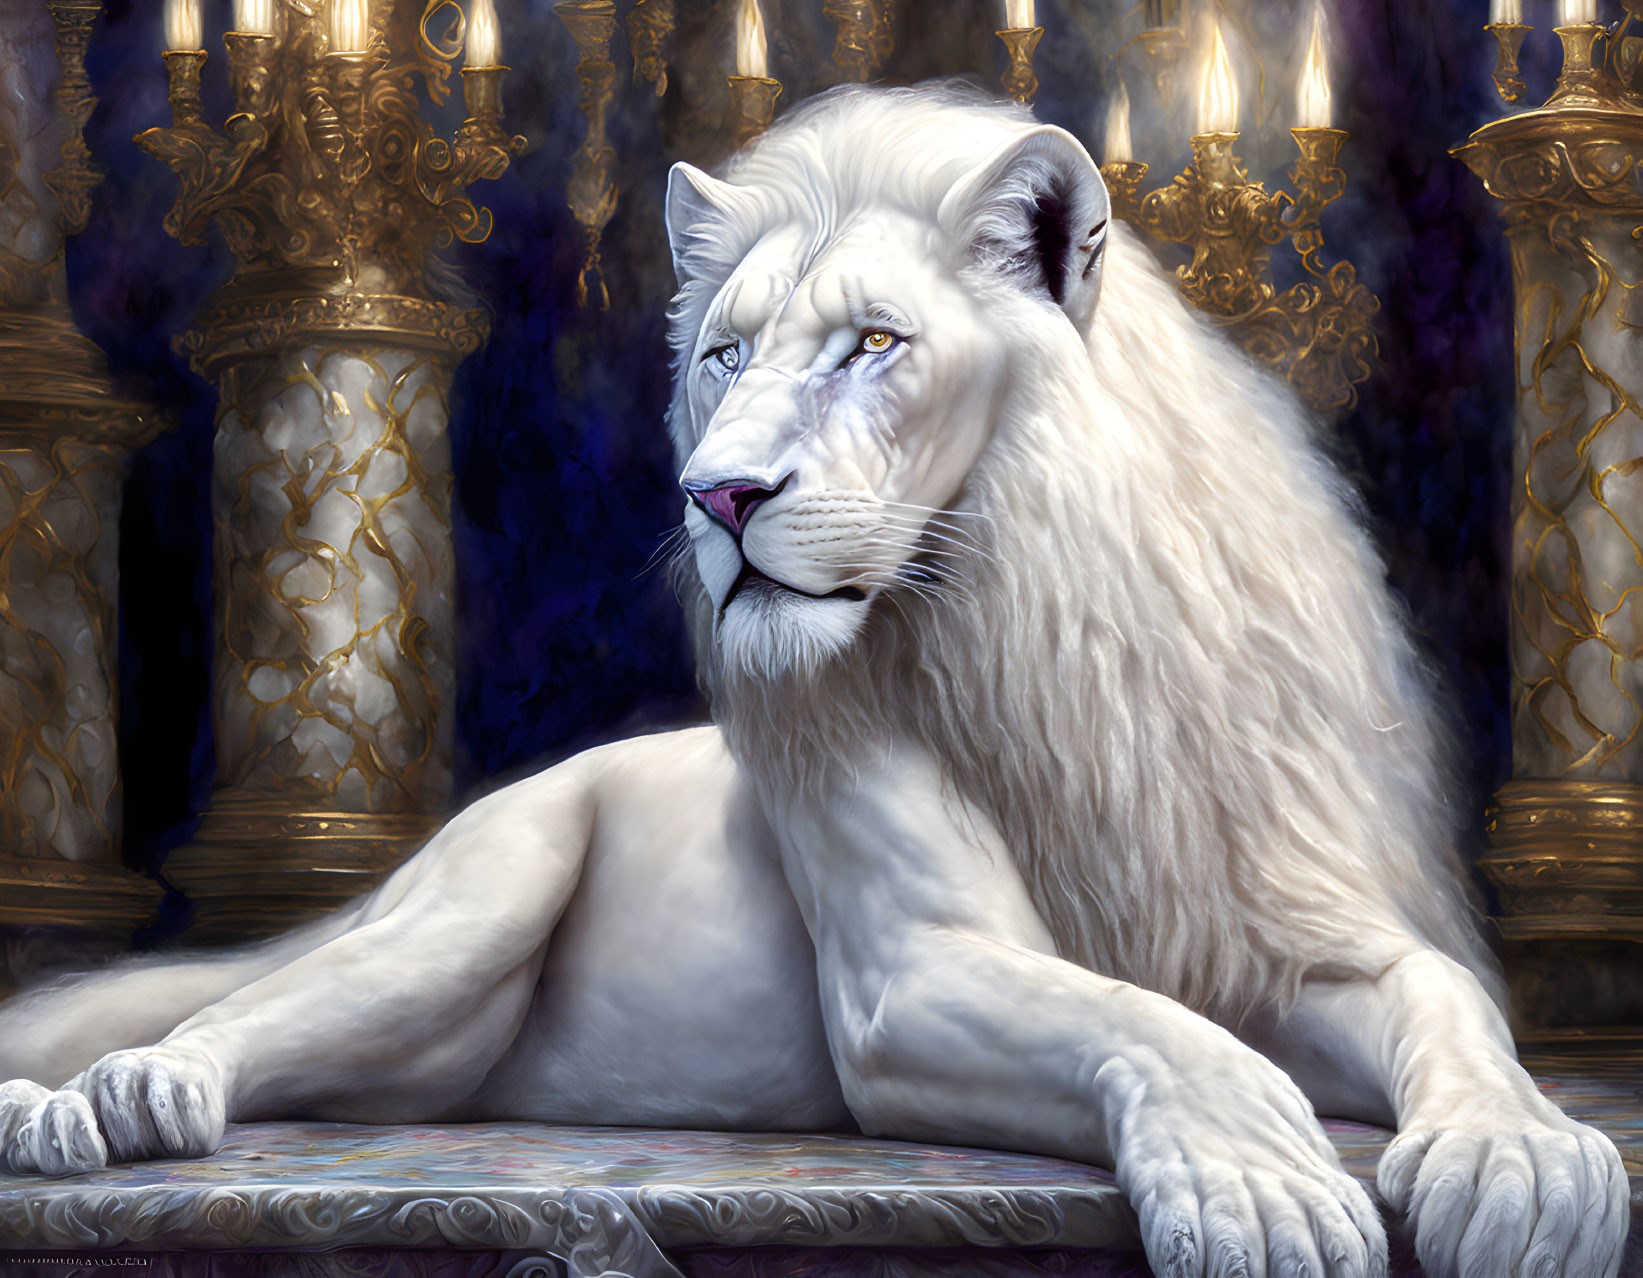 Weißer Löwe